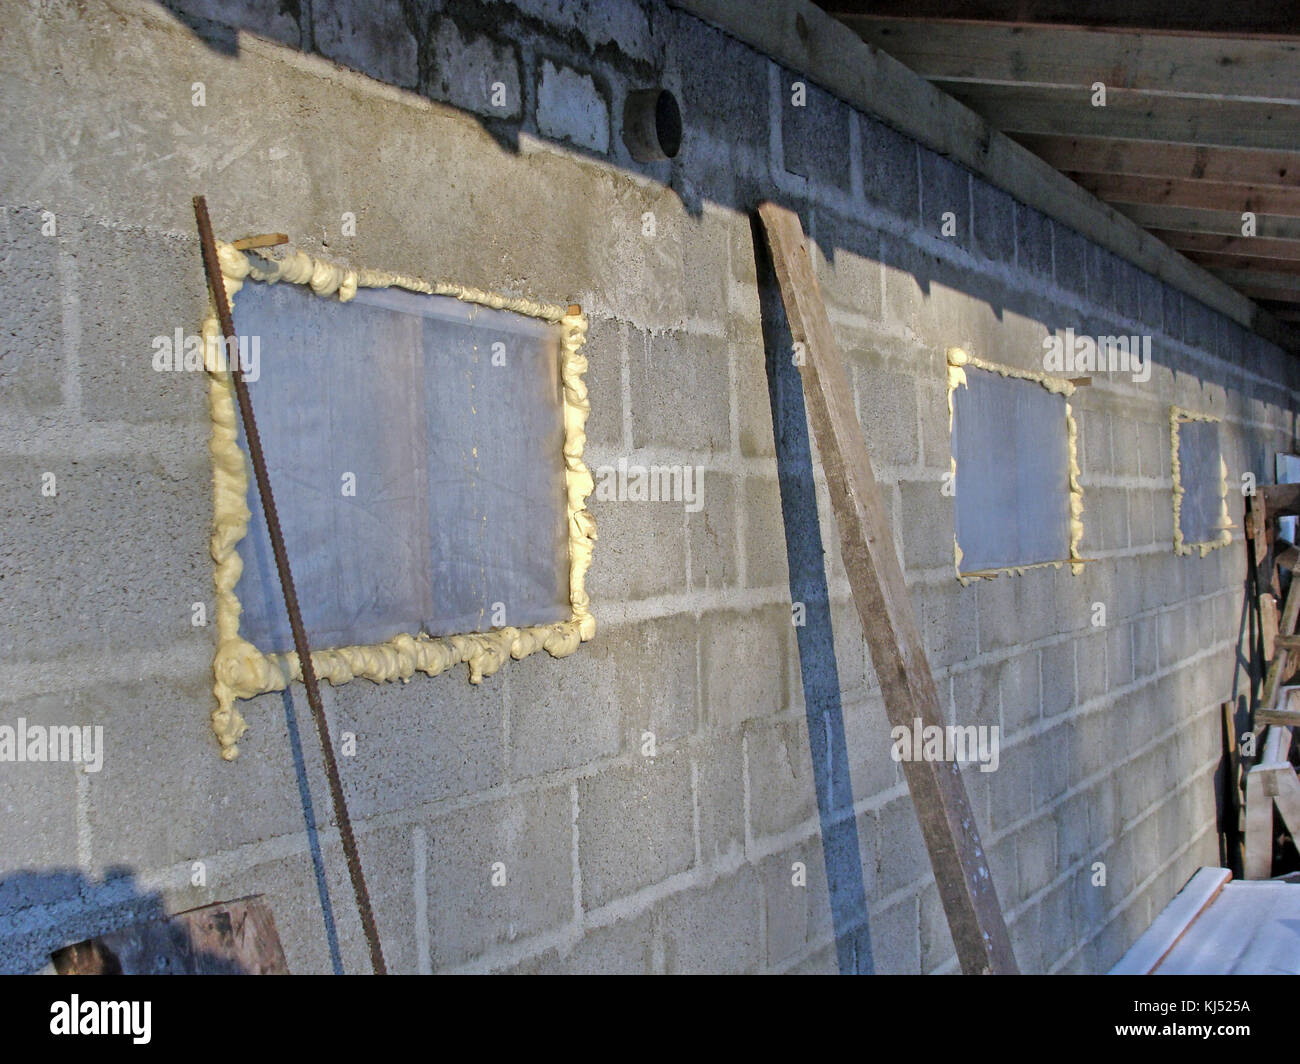 Auf Scheune im Bau Fenster Glas ist mit Folie und Montage Schaum ersetzt  Stockfotografie - Alamy